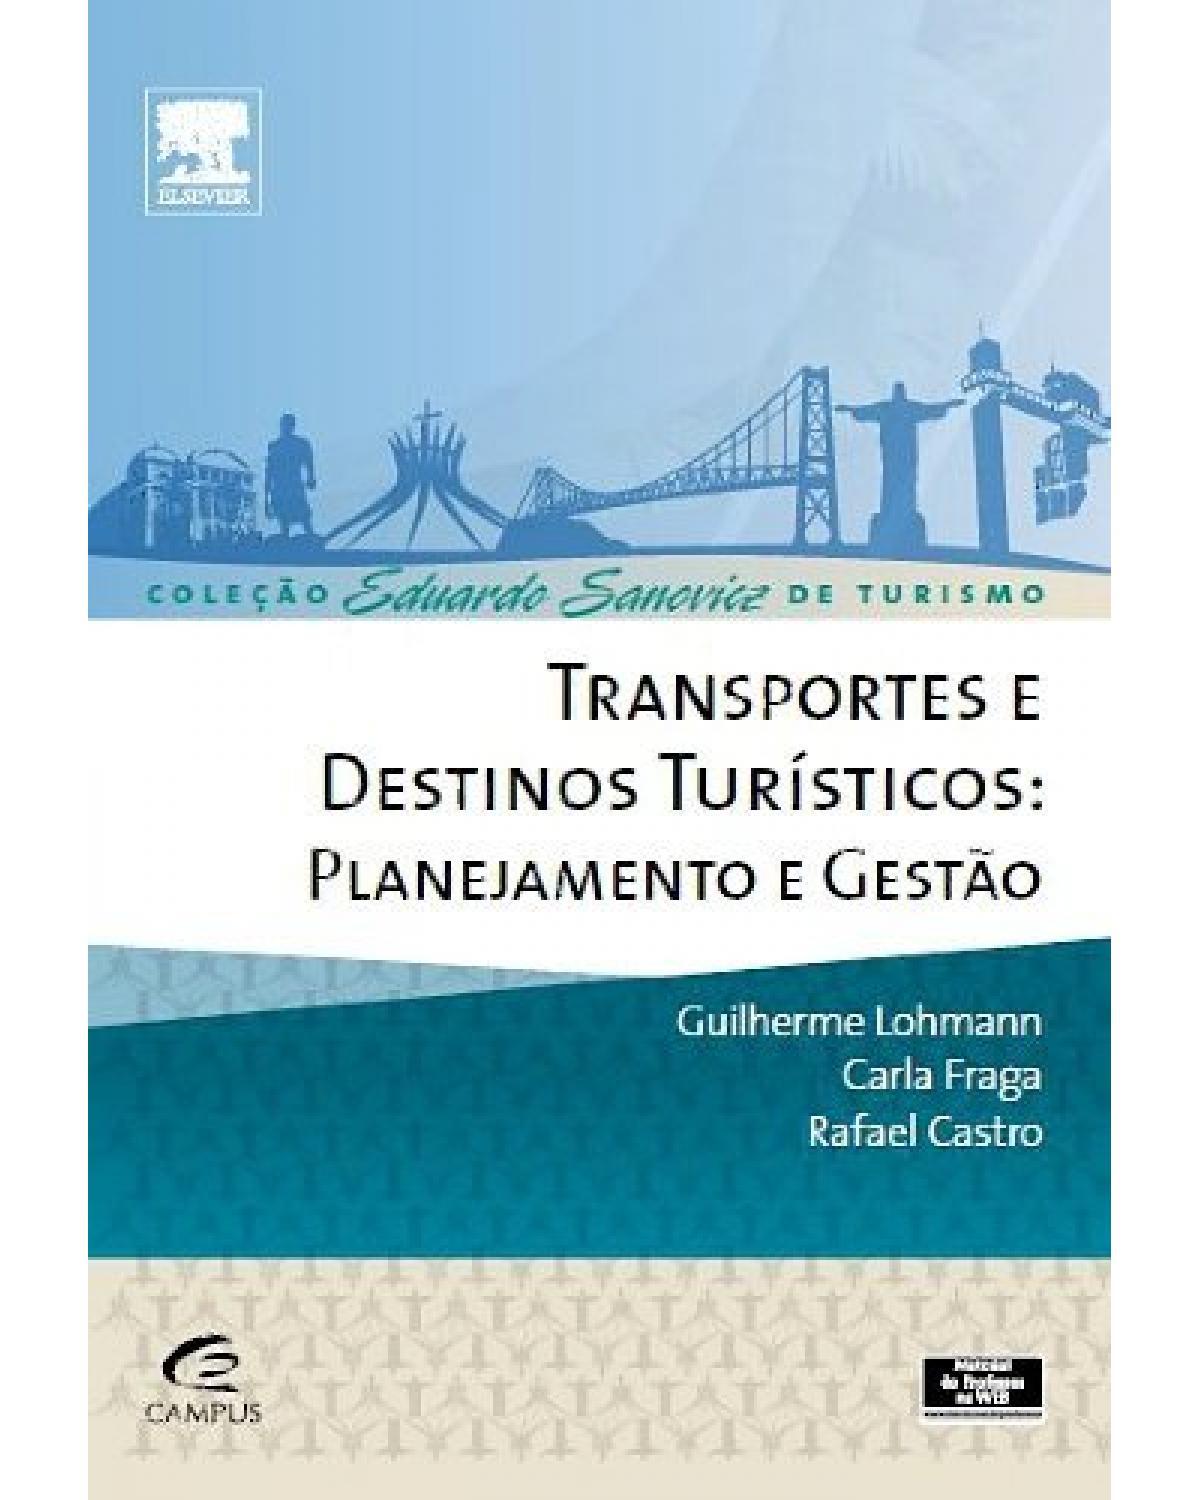 Transportes e destinos turísticos - planejamento e gestão - 1ª Edição | 2013